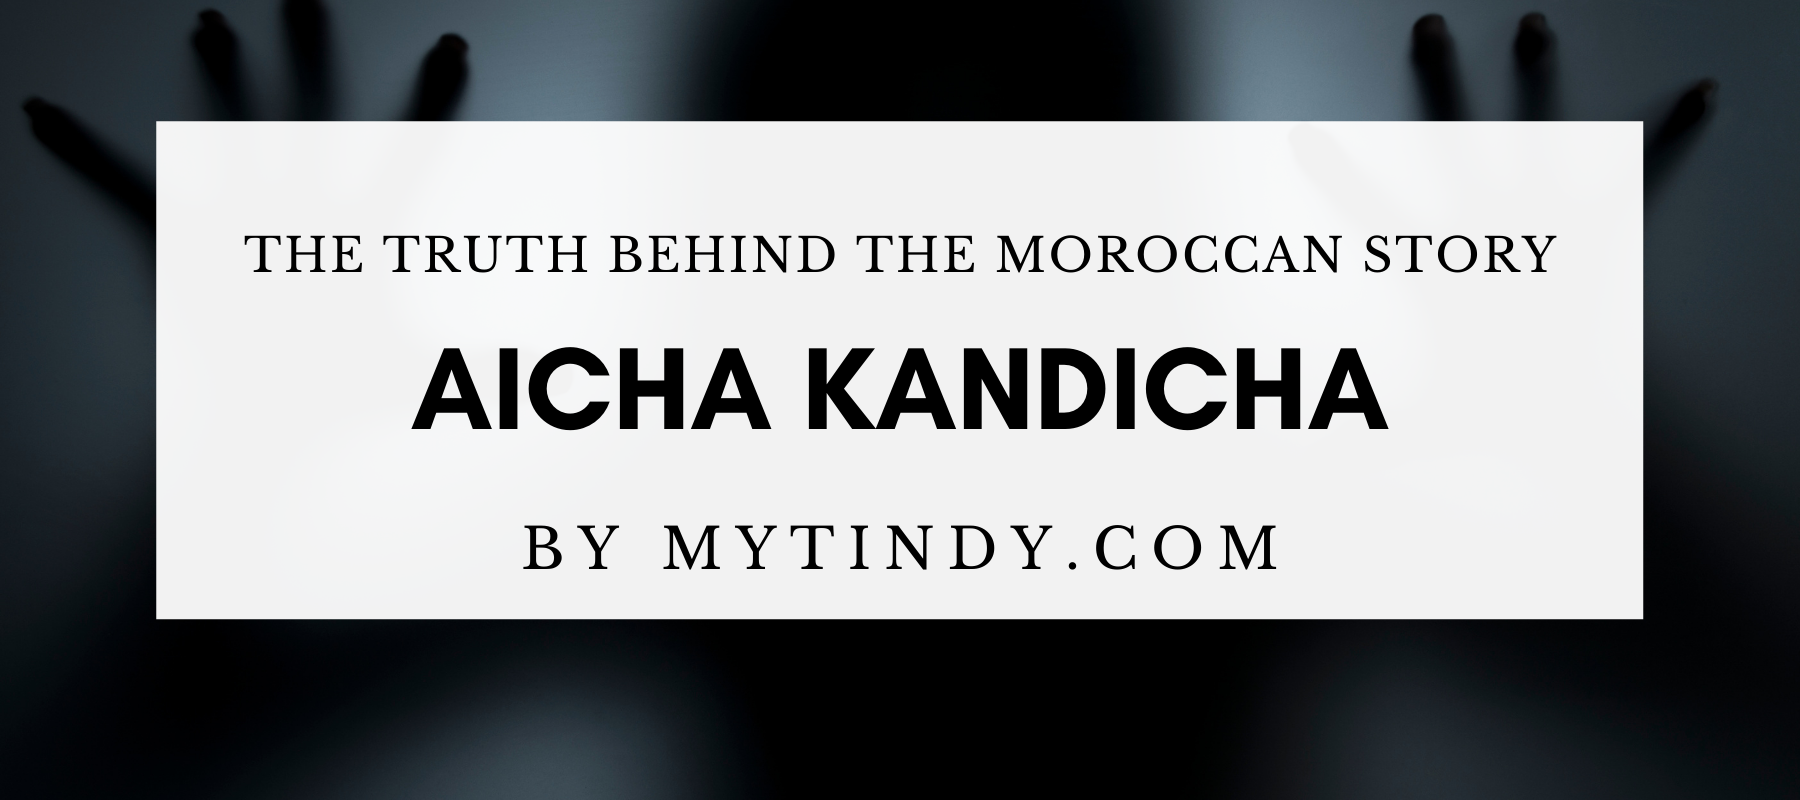 The Moroccan myth: Aicha Kandisha